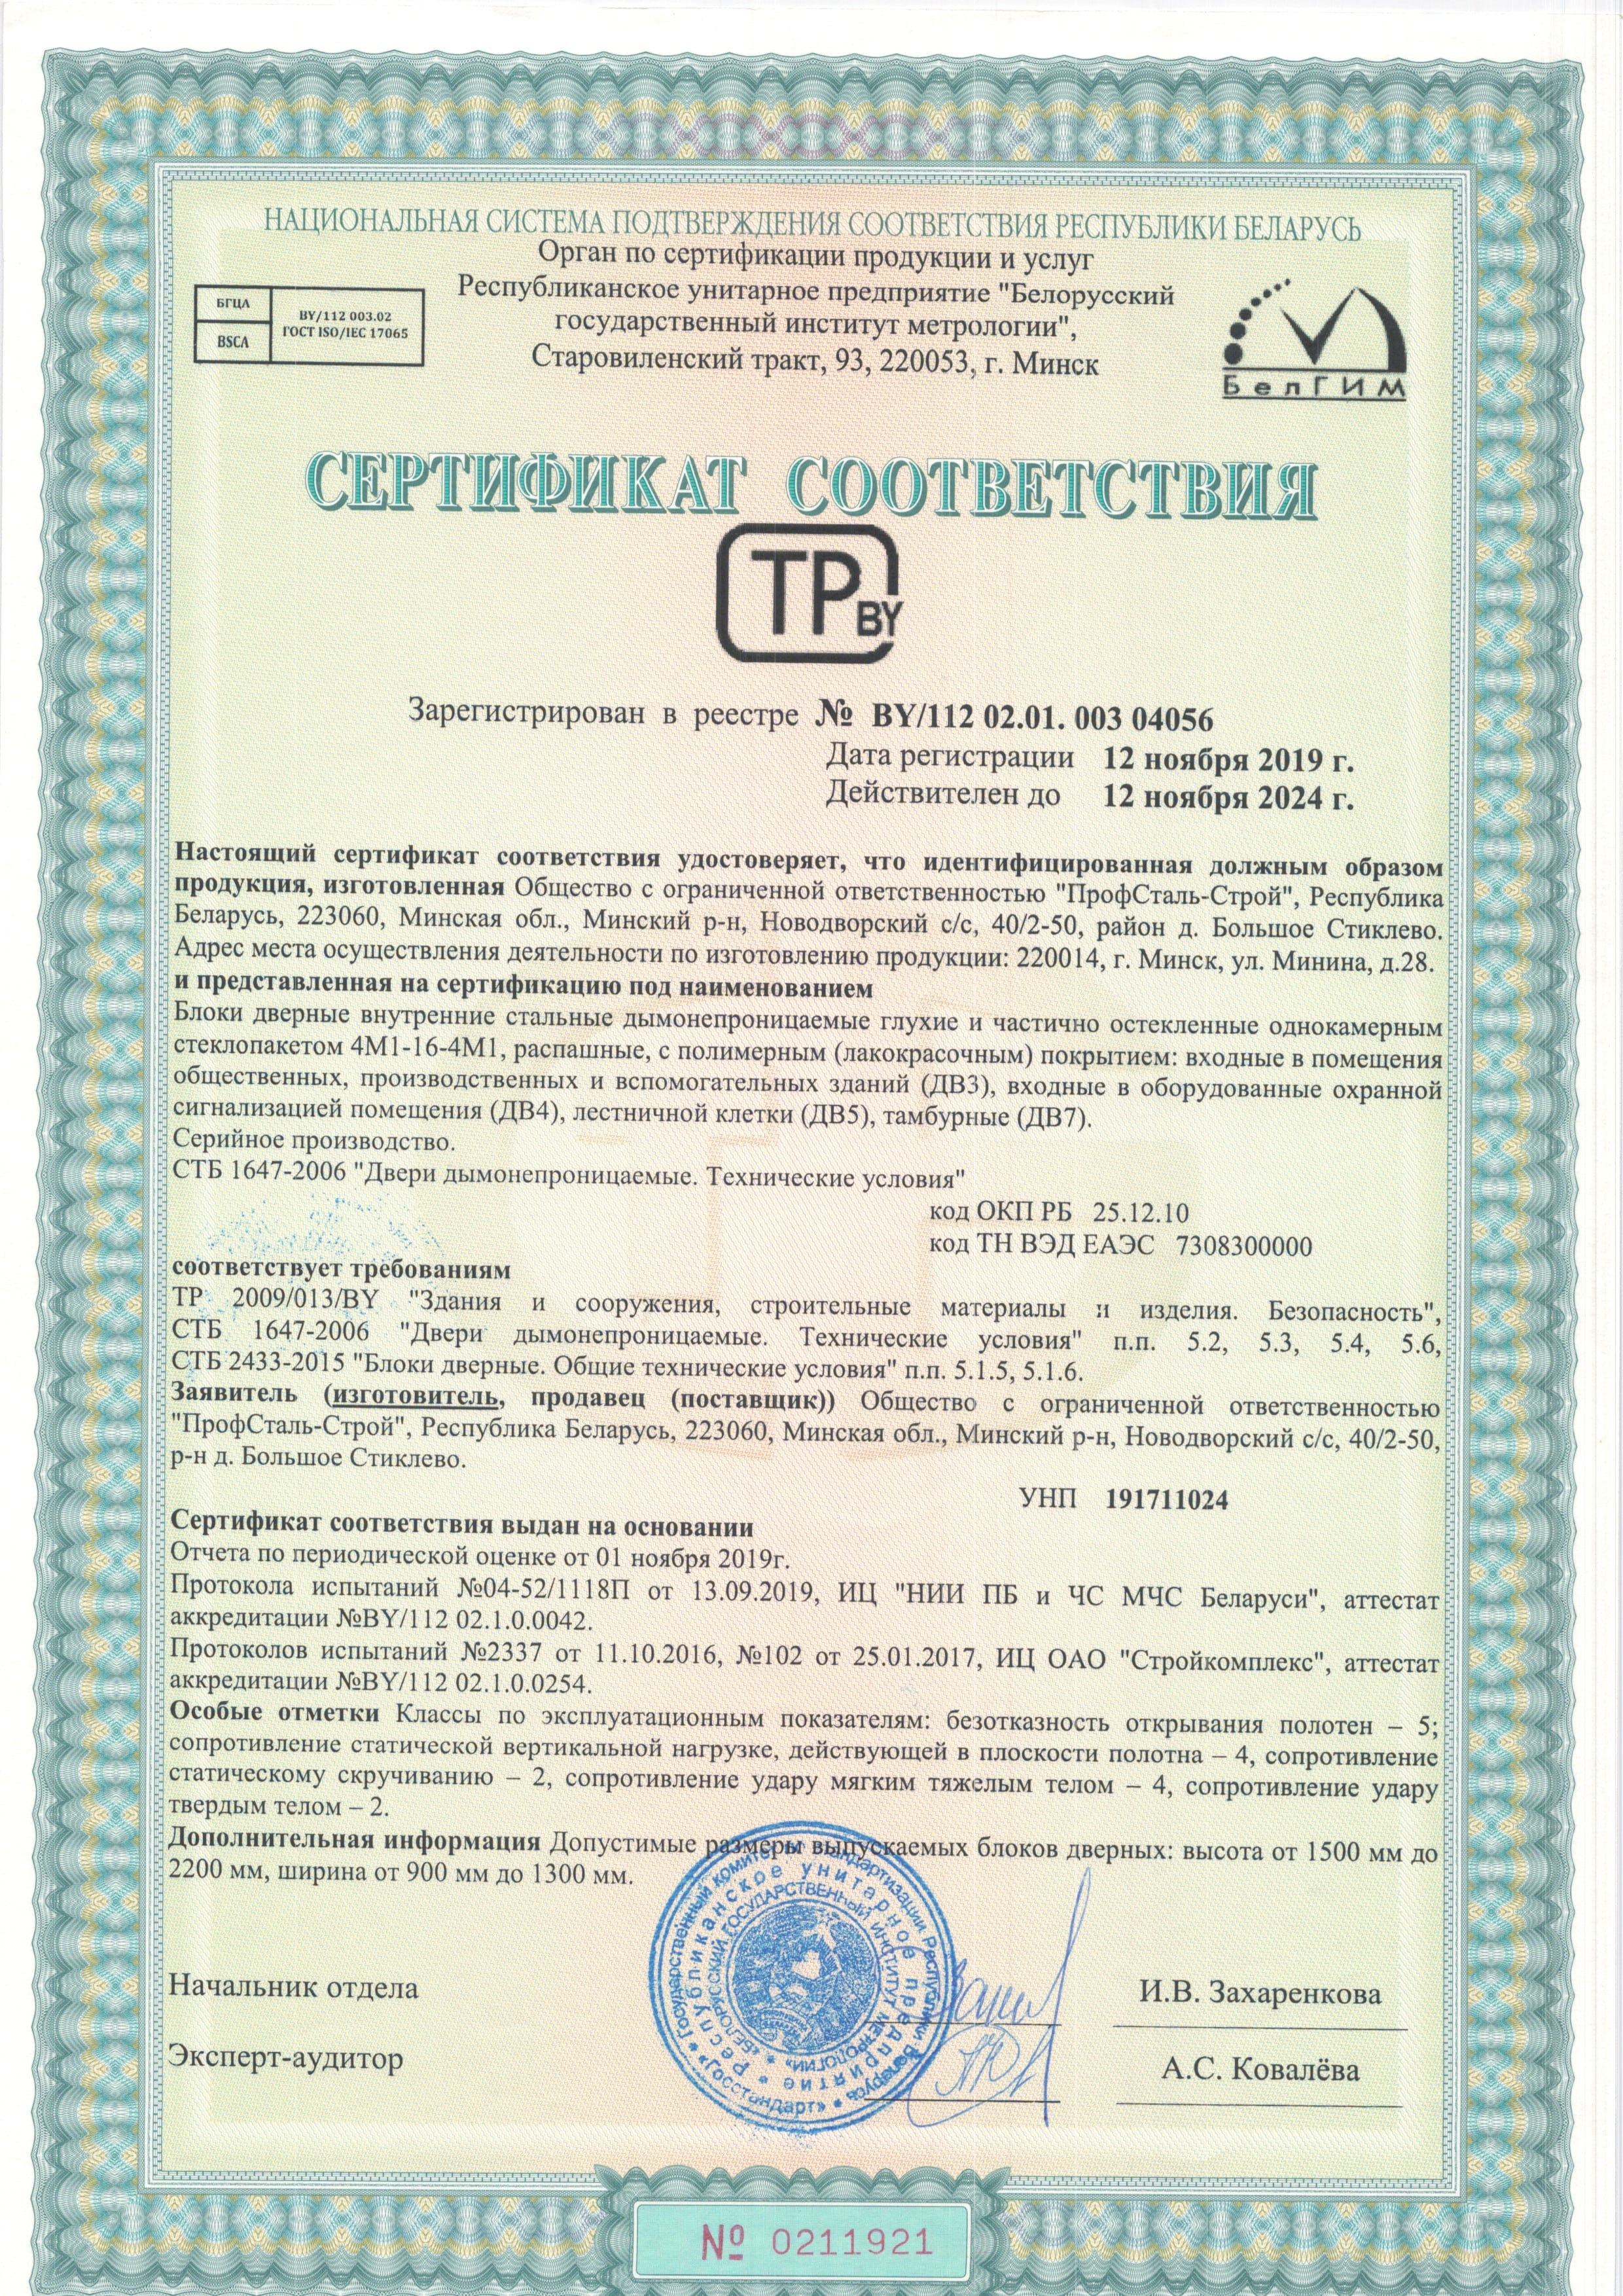 Сертификат соответствия блоки дверные дымонепроницаемые